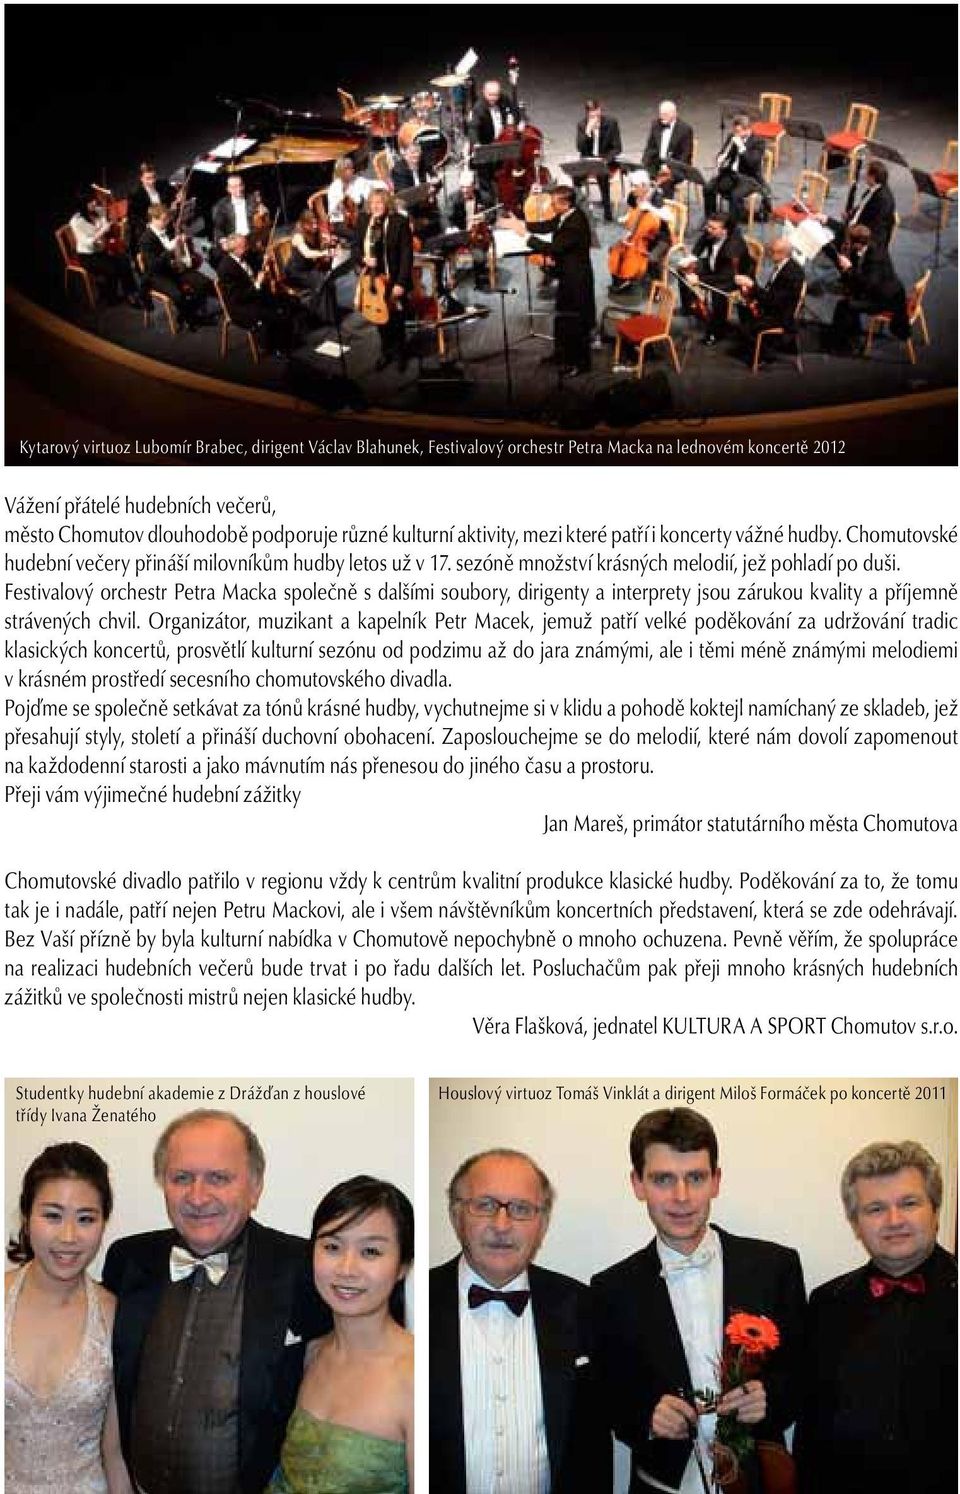 Festivalový orchestr Petra Macka společně s dalšími soubory, dirigenty a interprety jsou zárukou kvality a příjemně strávených chvil.